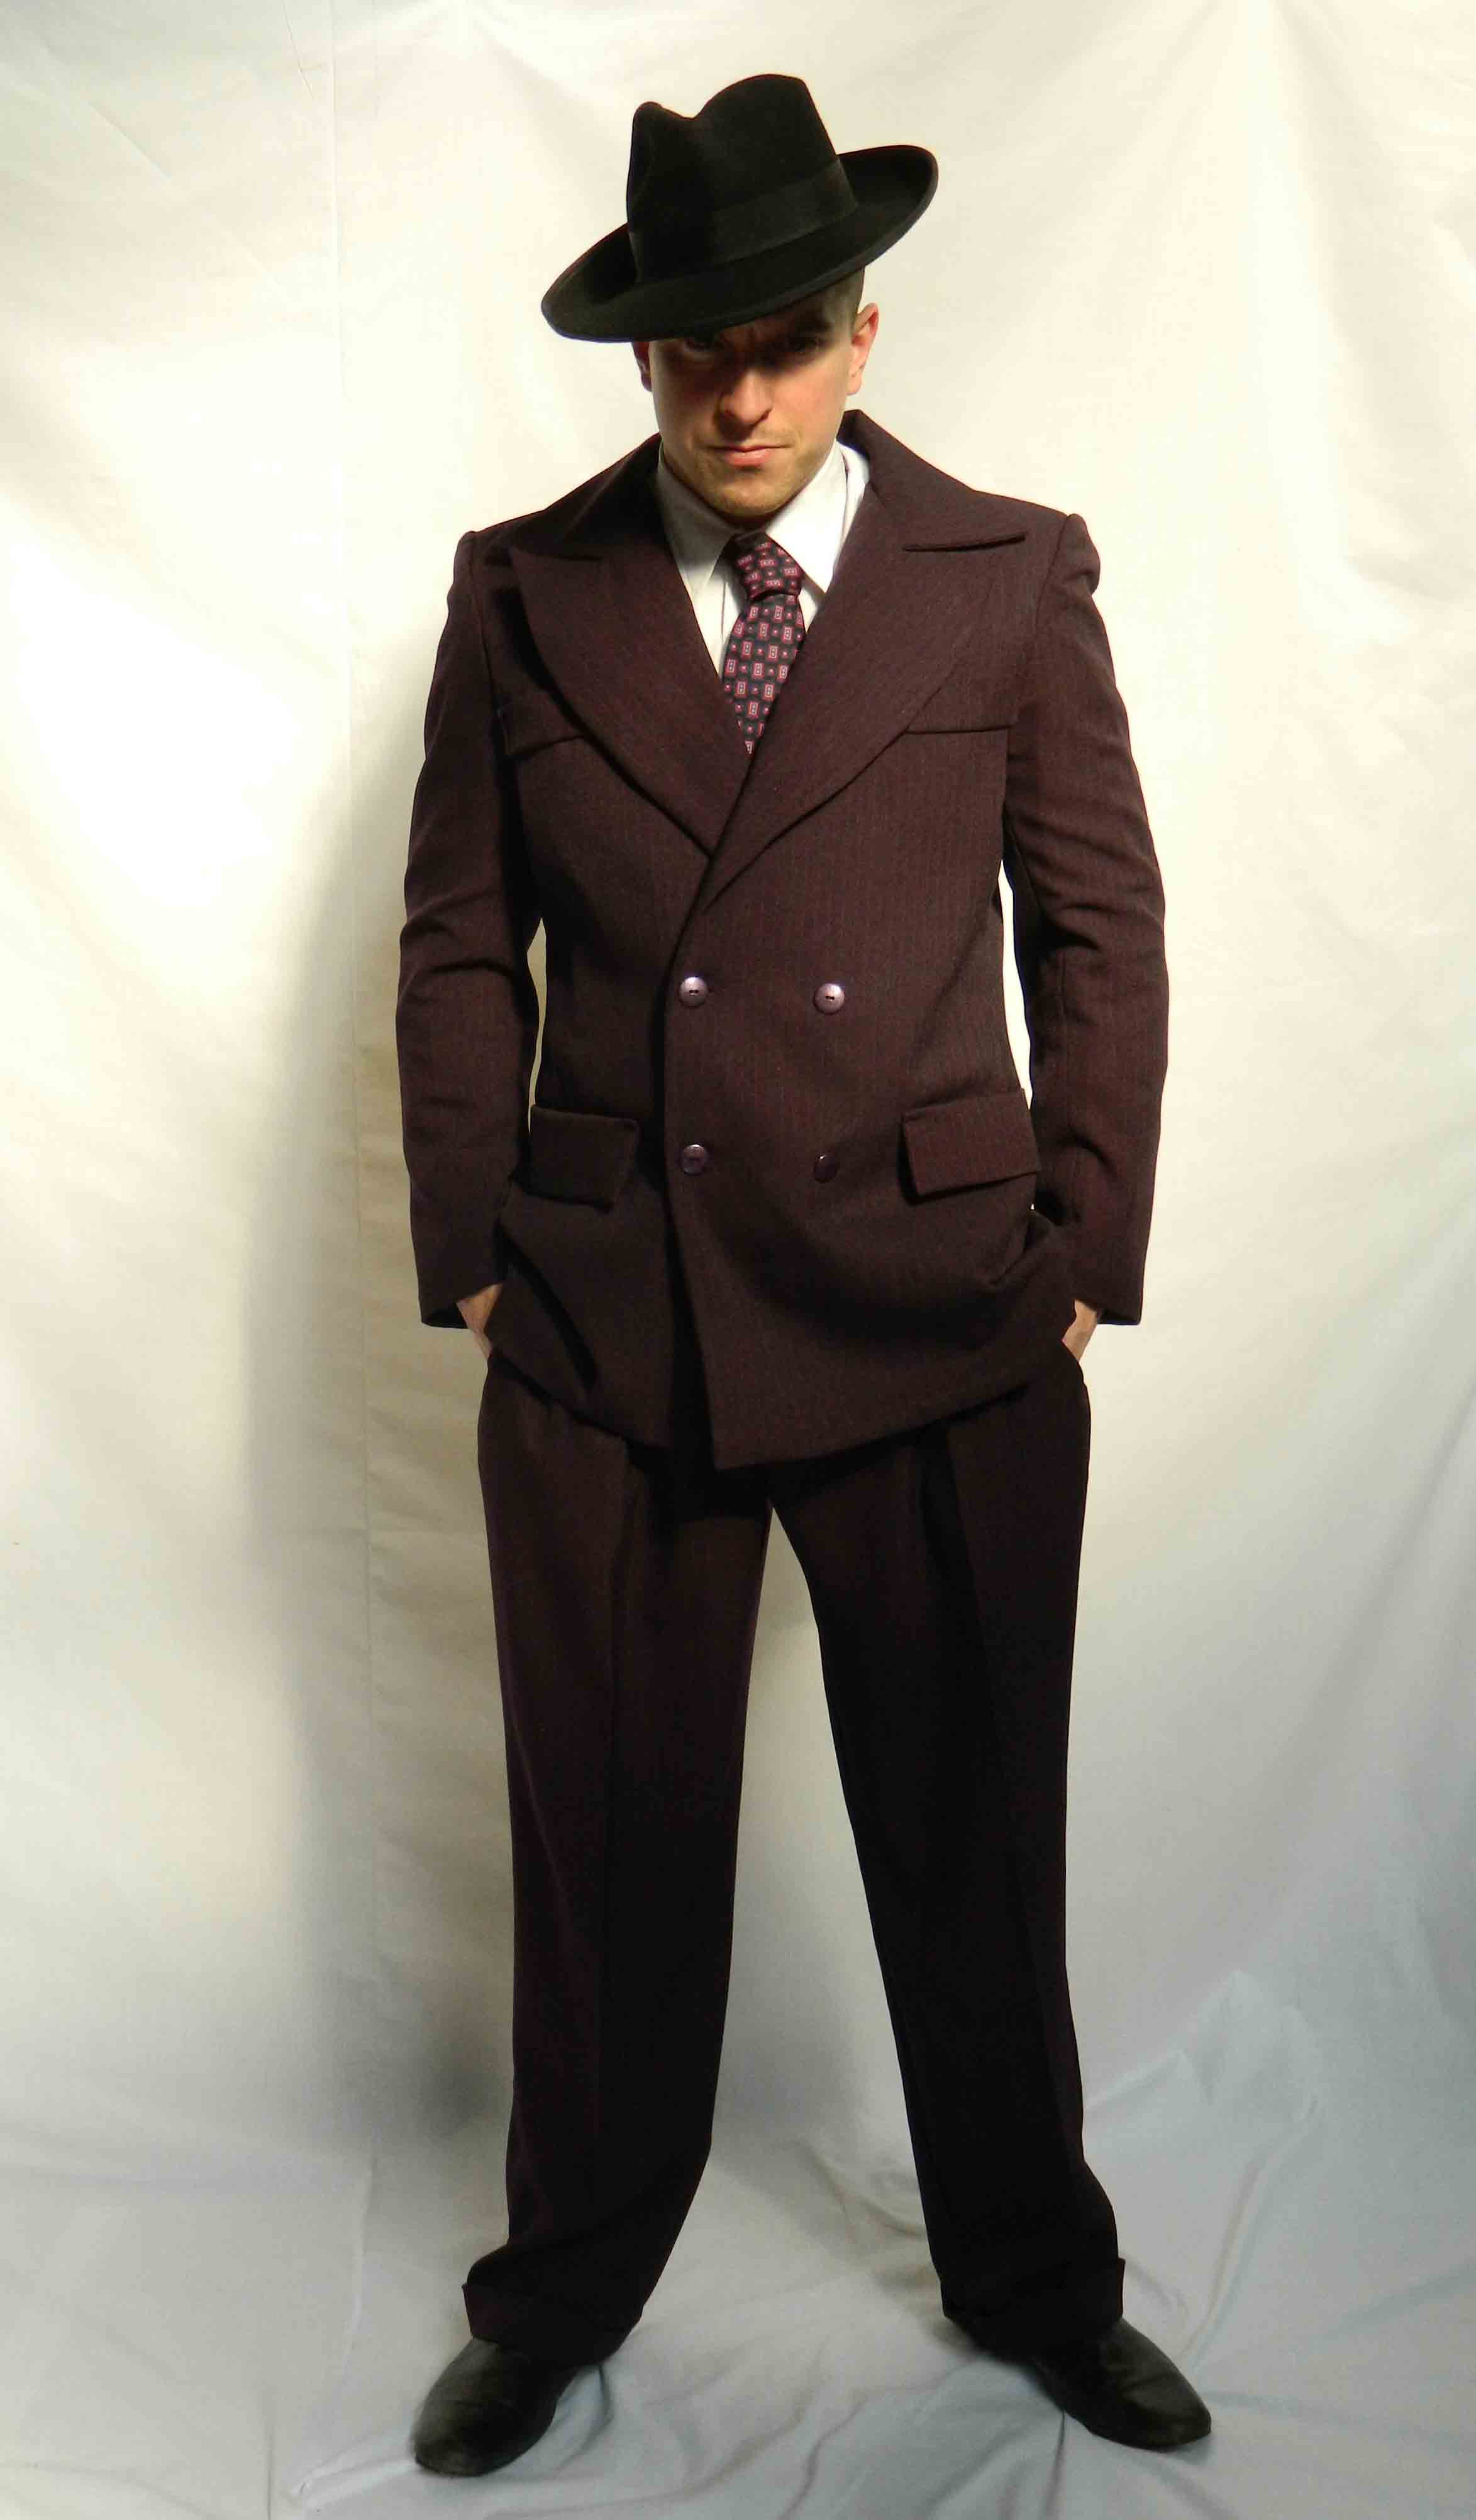 Spiv Suit fancy dress hire